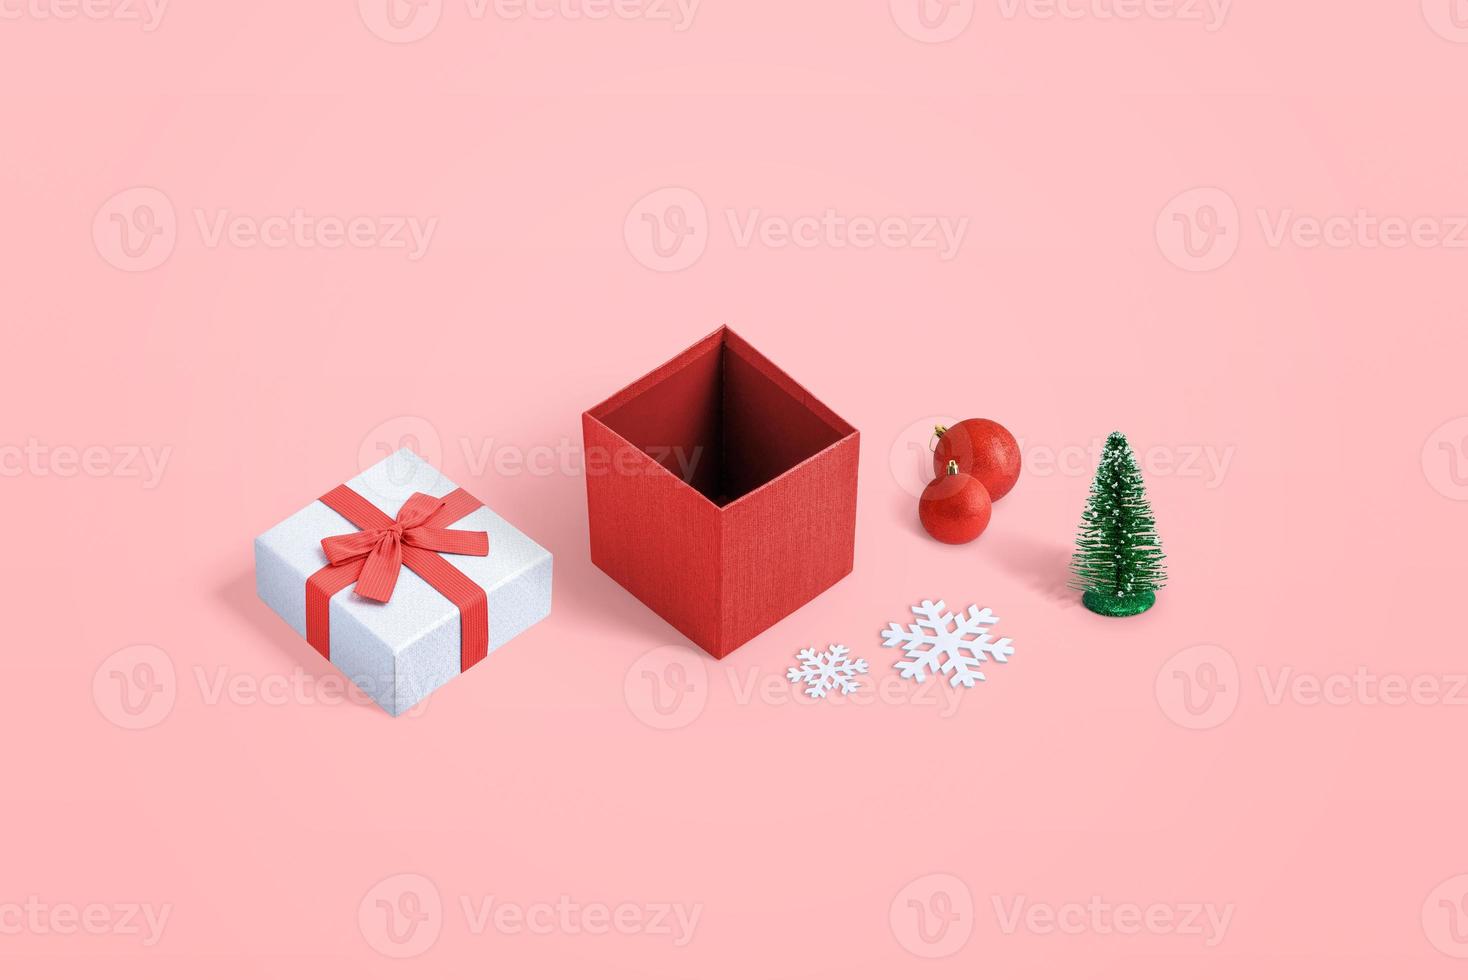 linda caixa de presente de Natal aberta com várias decorações em fundo rosa pastel foto